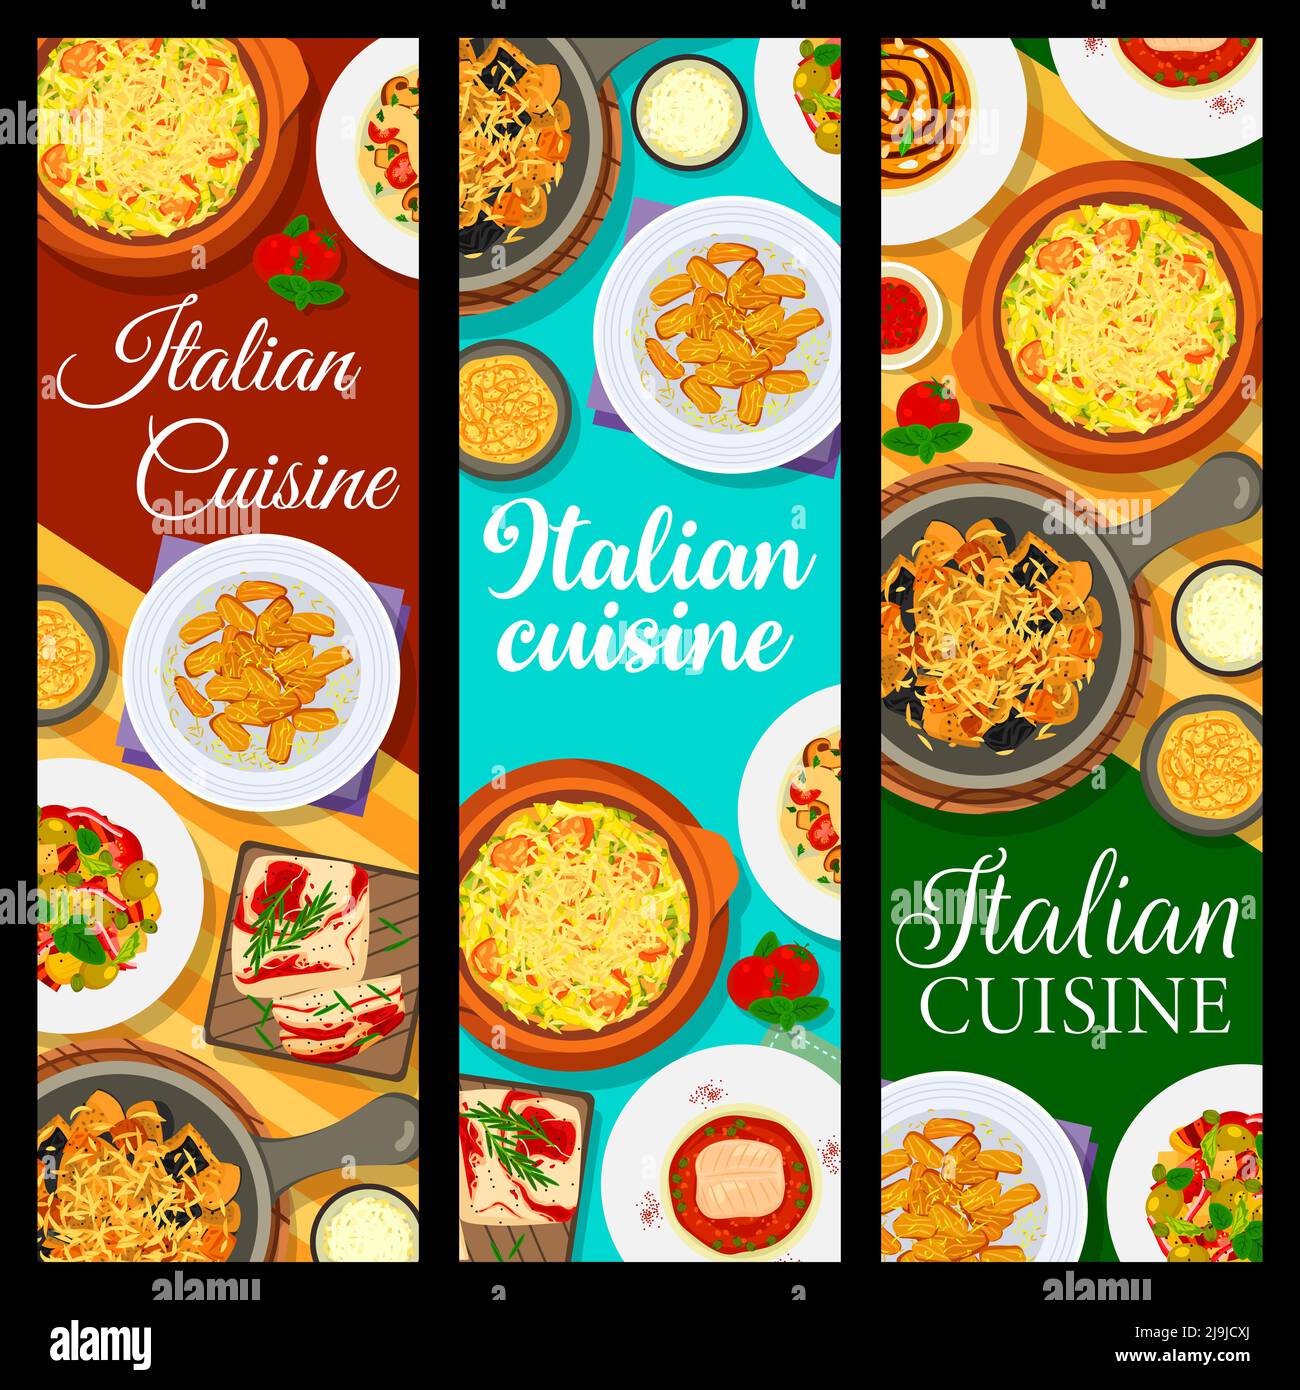 Italienische Küche-Menü Banner, Italien Restaurant Essen Pasta, Salate und Suppe. Italienische Küche und traditionelle mediterrane Abendessen mit sizilianischen Mittagessen Mahlzeiten mit Fisch, Käse und Kartoffeln Stock Vektor